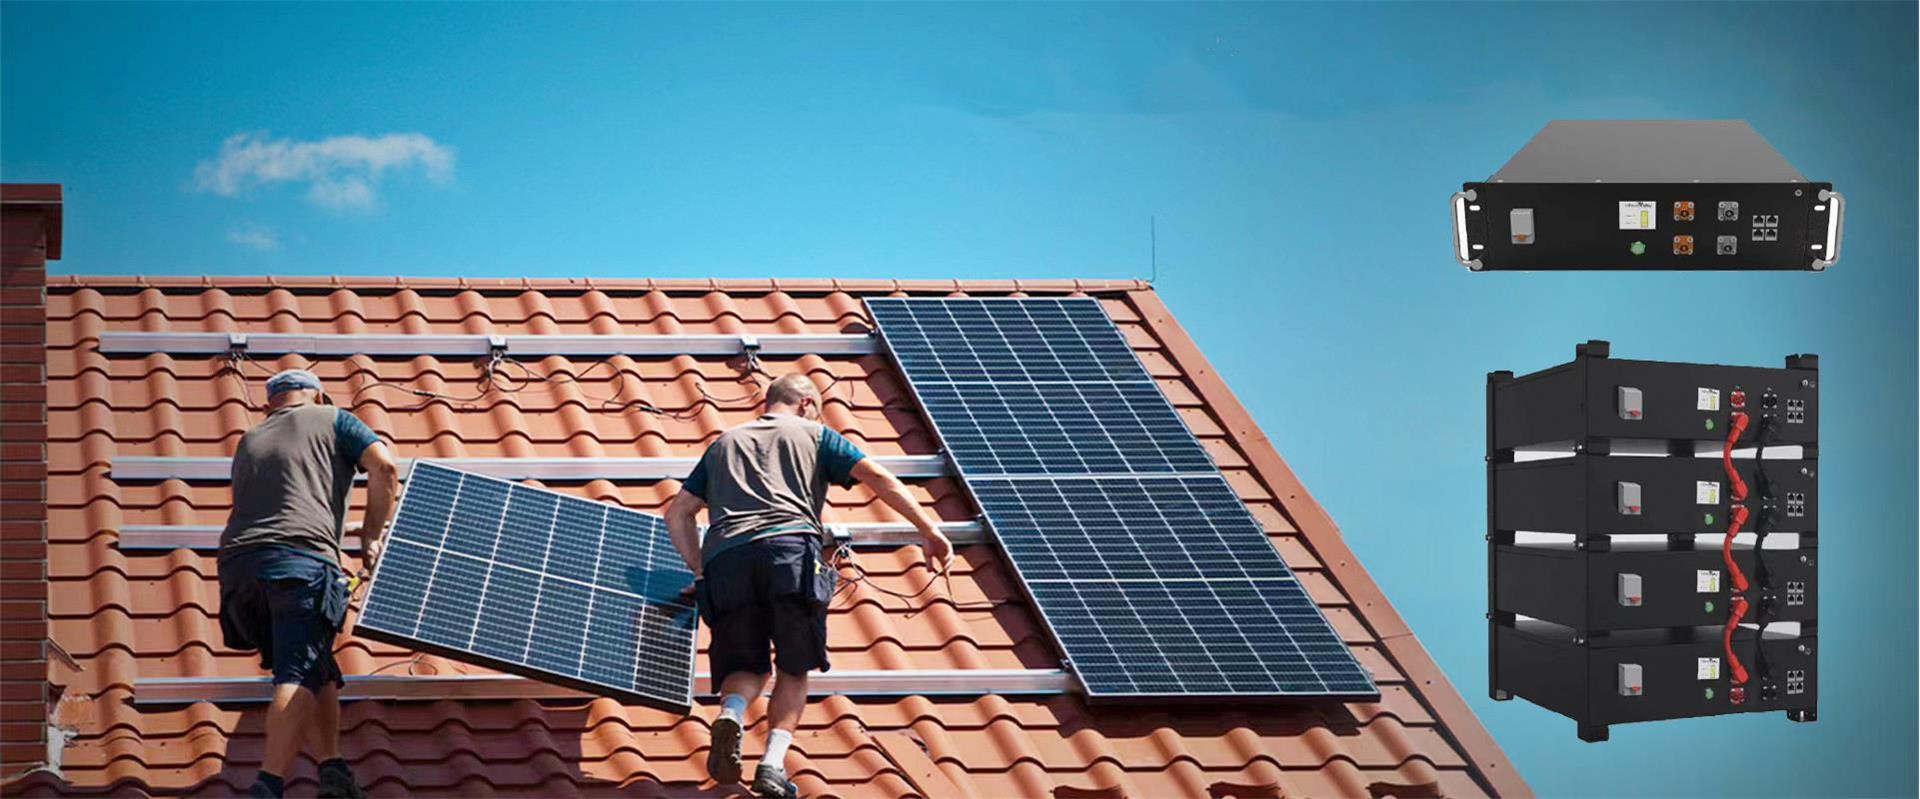 BESS | Batería solar residencial Energía almacenamiento Sistema Litio Ion Lifepo4 inversor Proveedor, Distribuidor